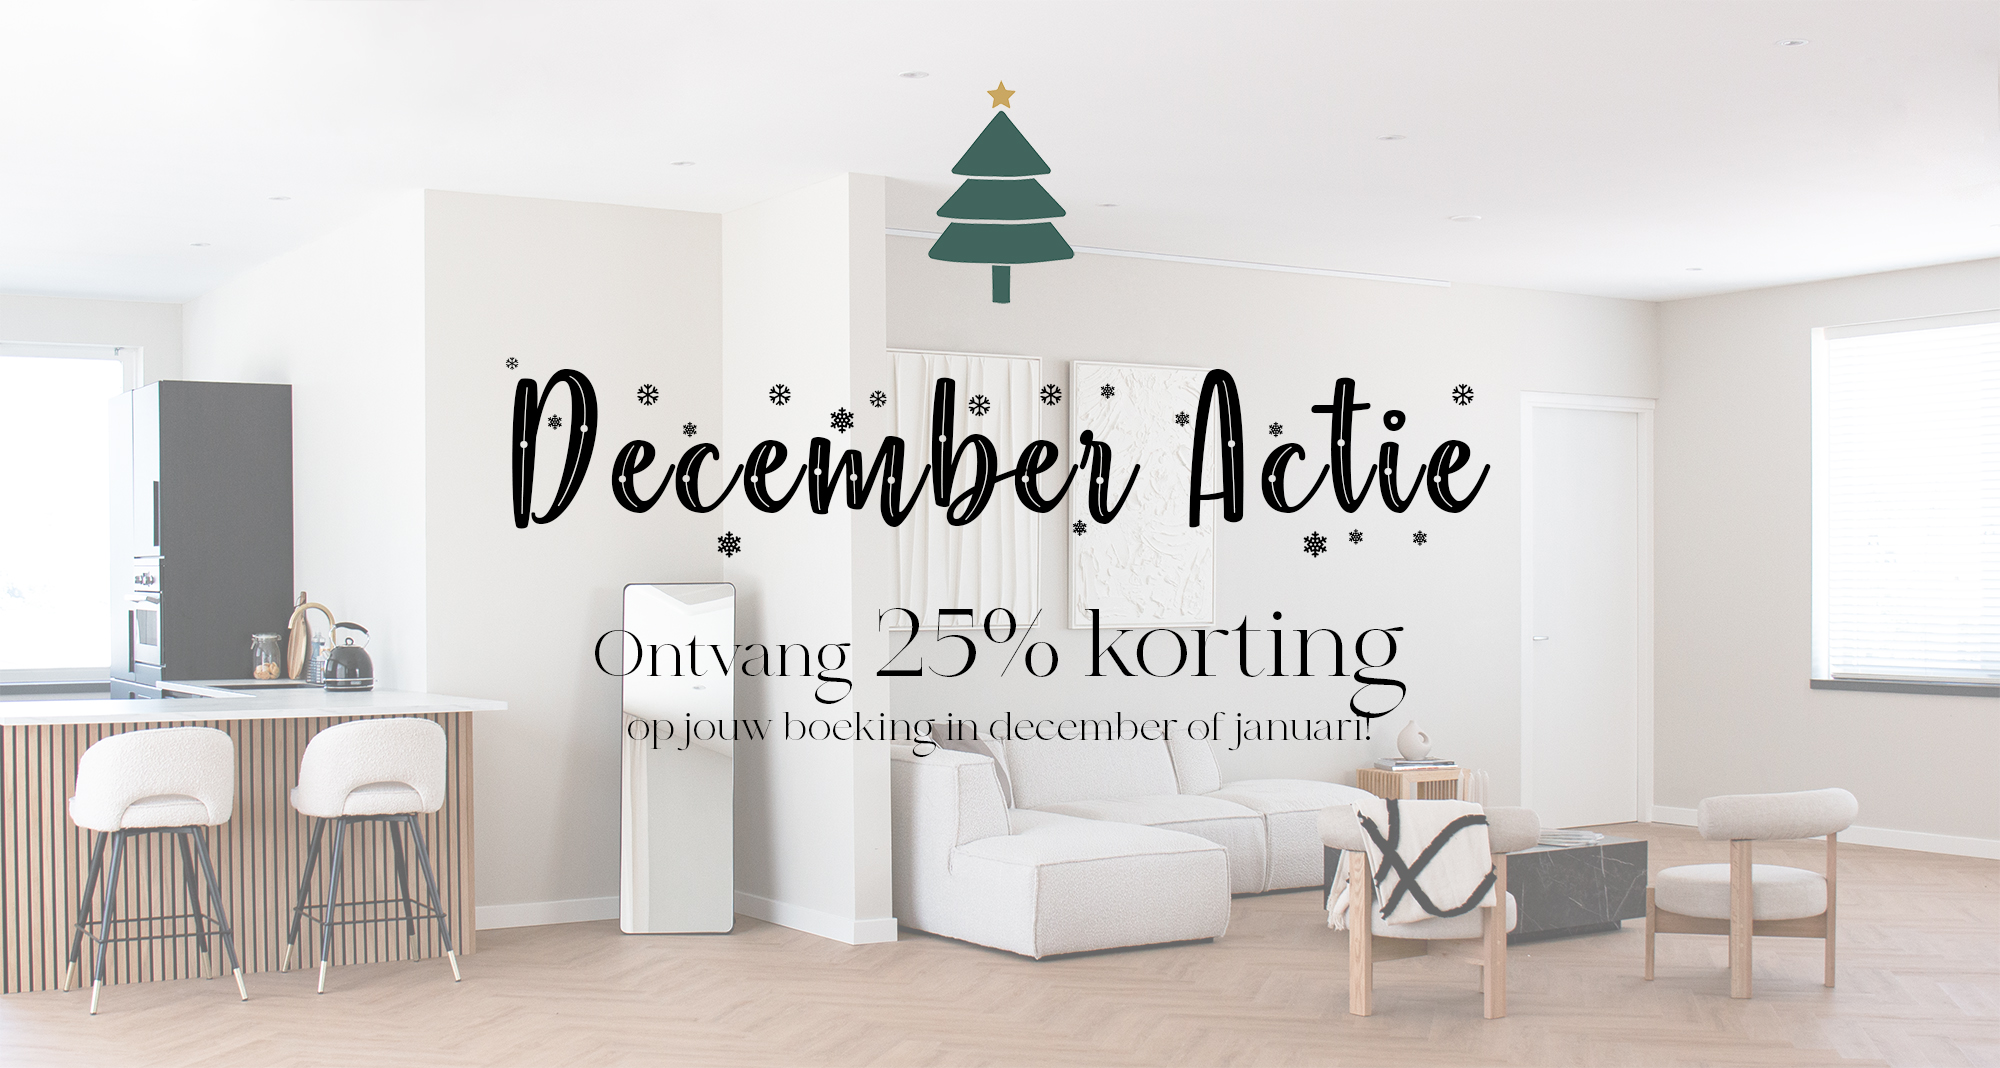 December Actie - 25% korting Studio Xela Alkmaar